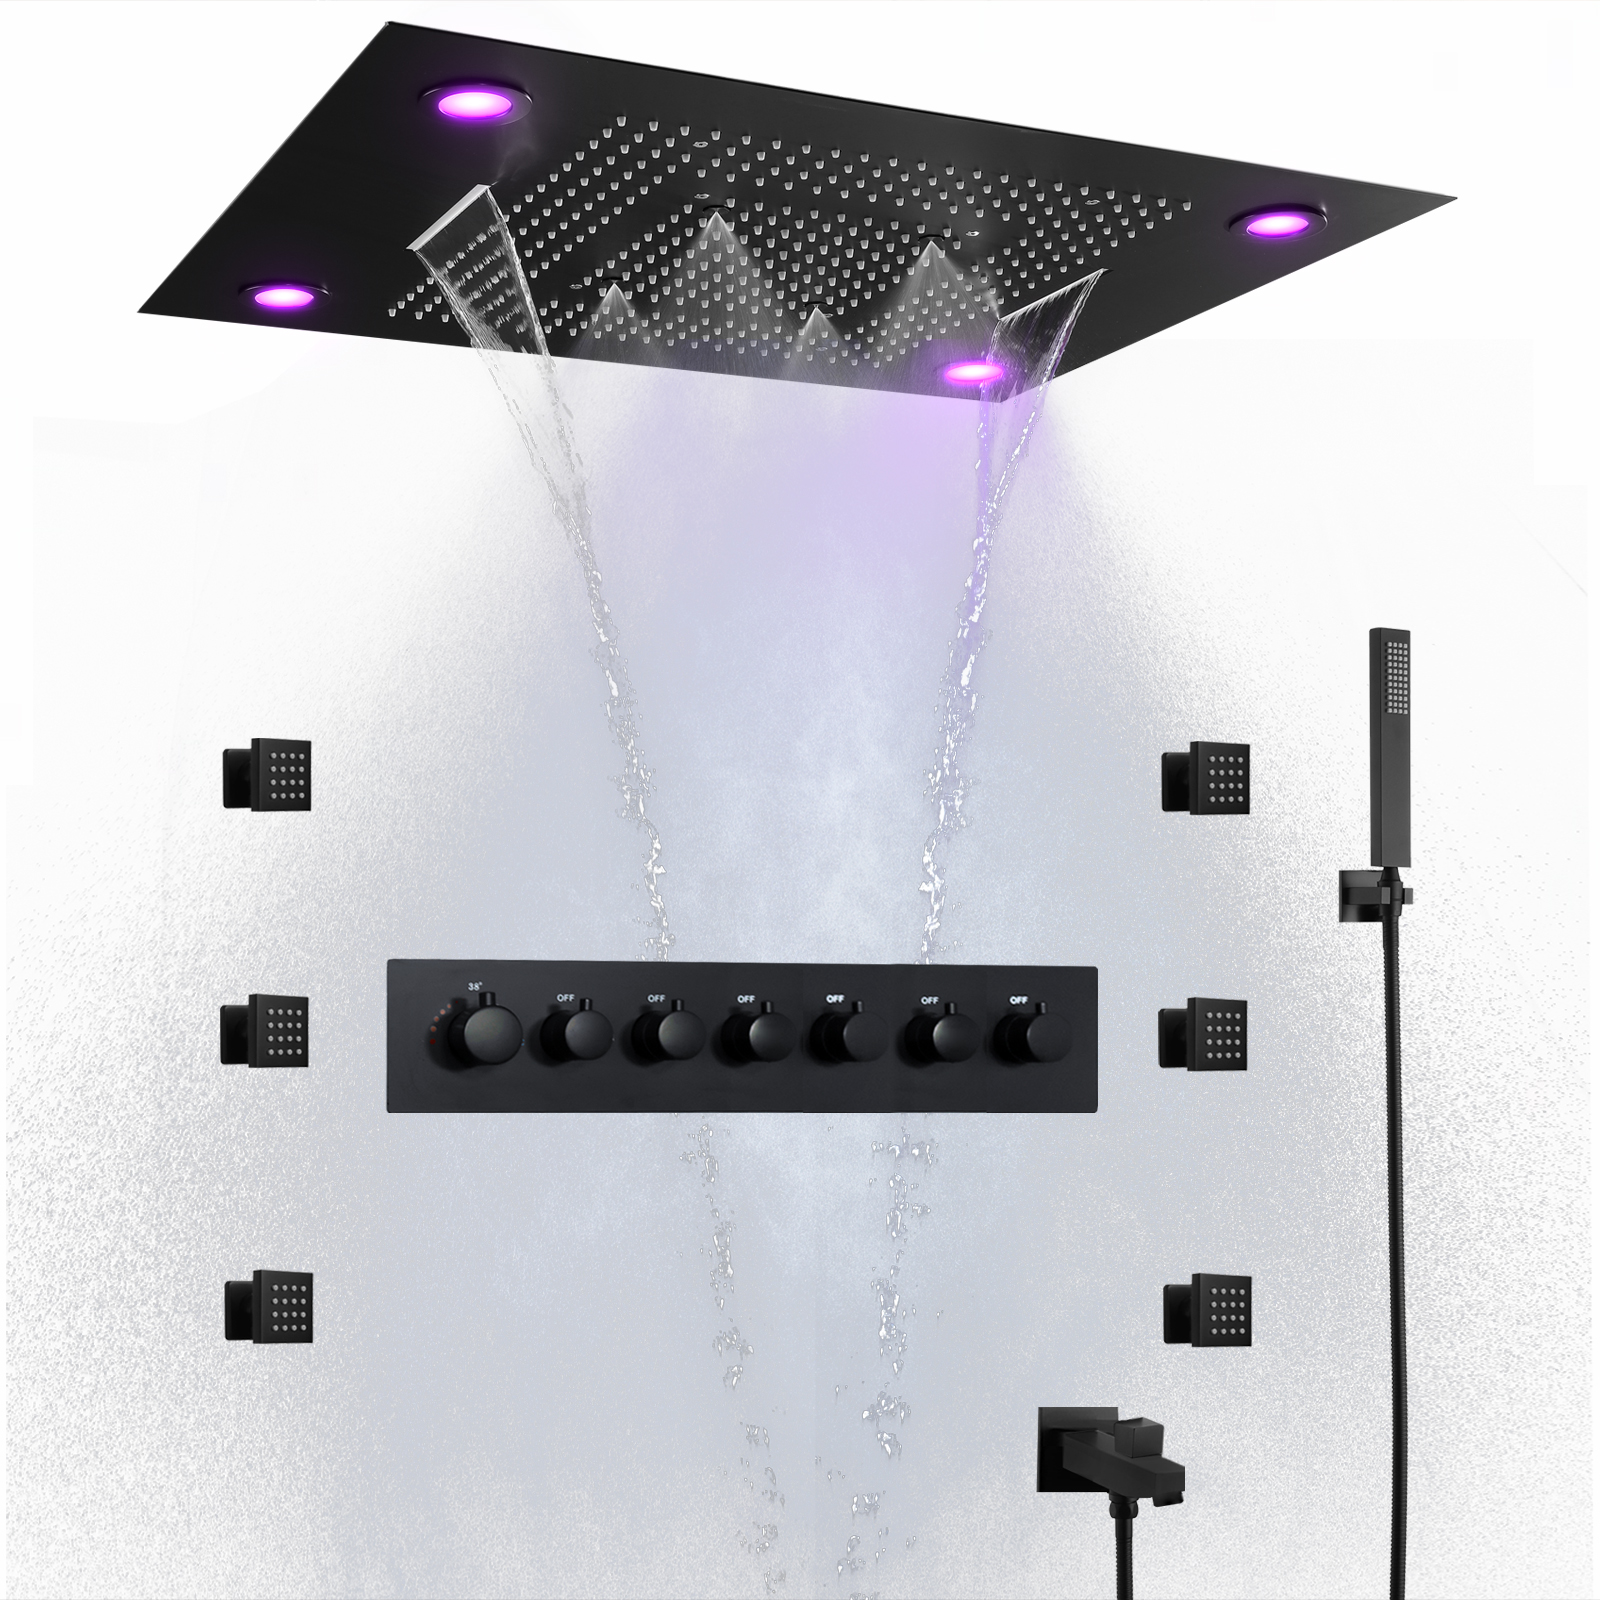 800*600 مللي متر رأس دش أسود LED نظام دش متعدد الوظائف ترموستاتي للحمام مع نفاثات جسم الدش